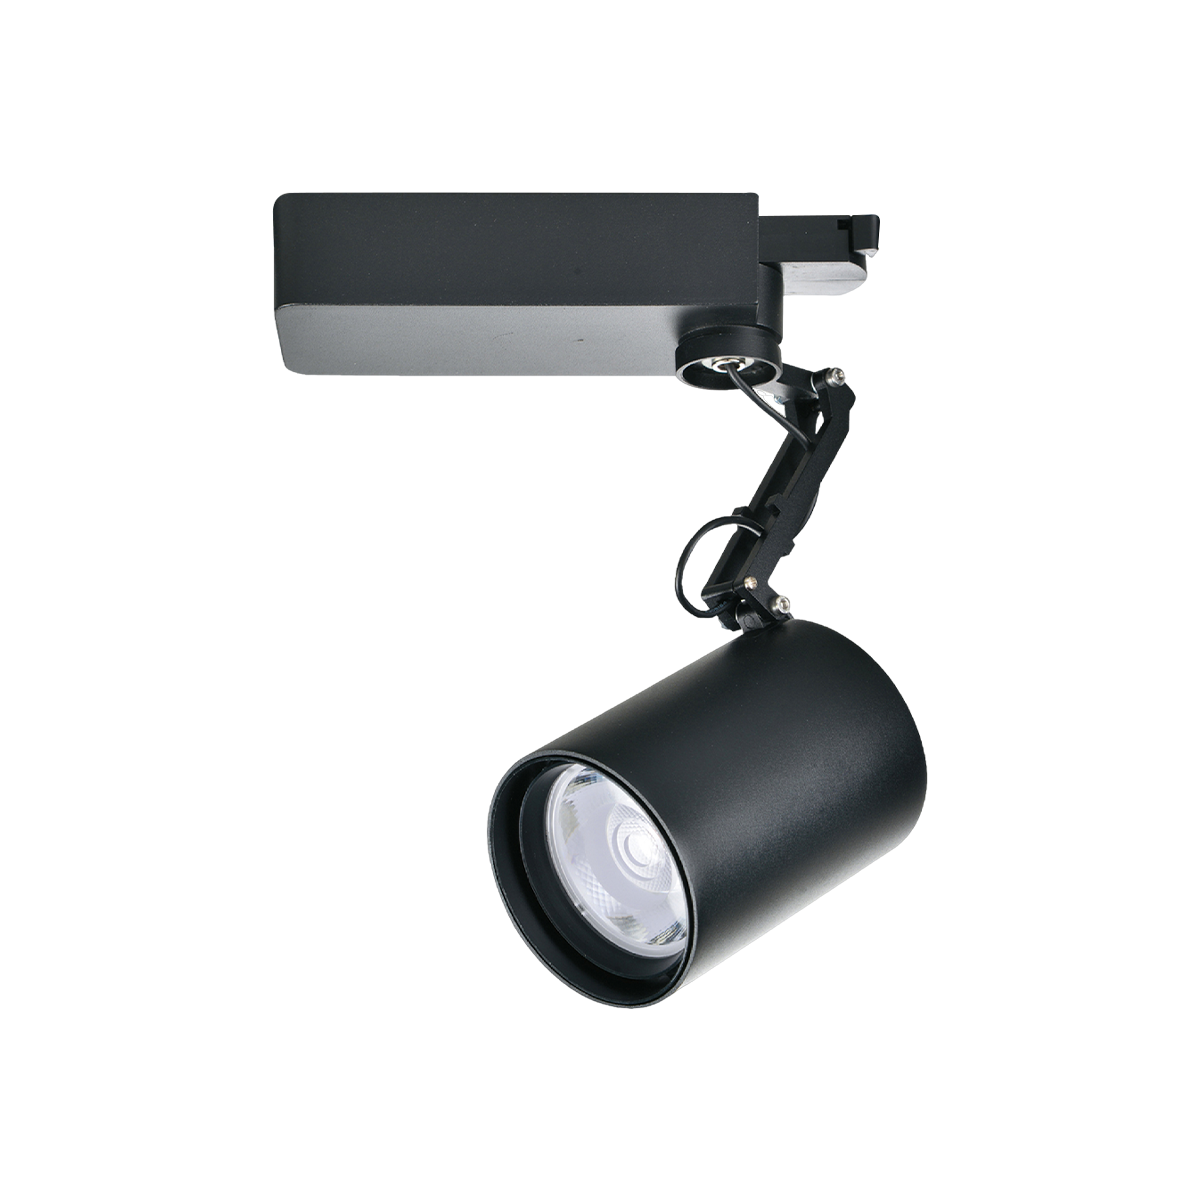 【KAO'S】LED COB 機械手軌道燈 30W 黑殼 高演色性 全電壓